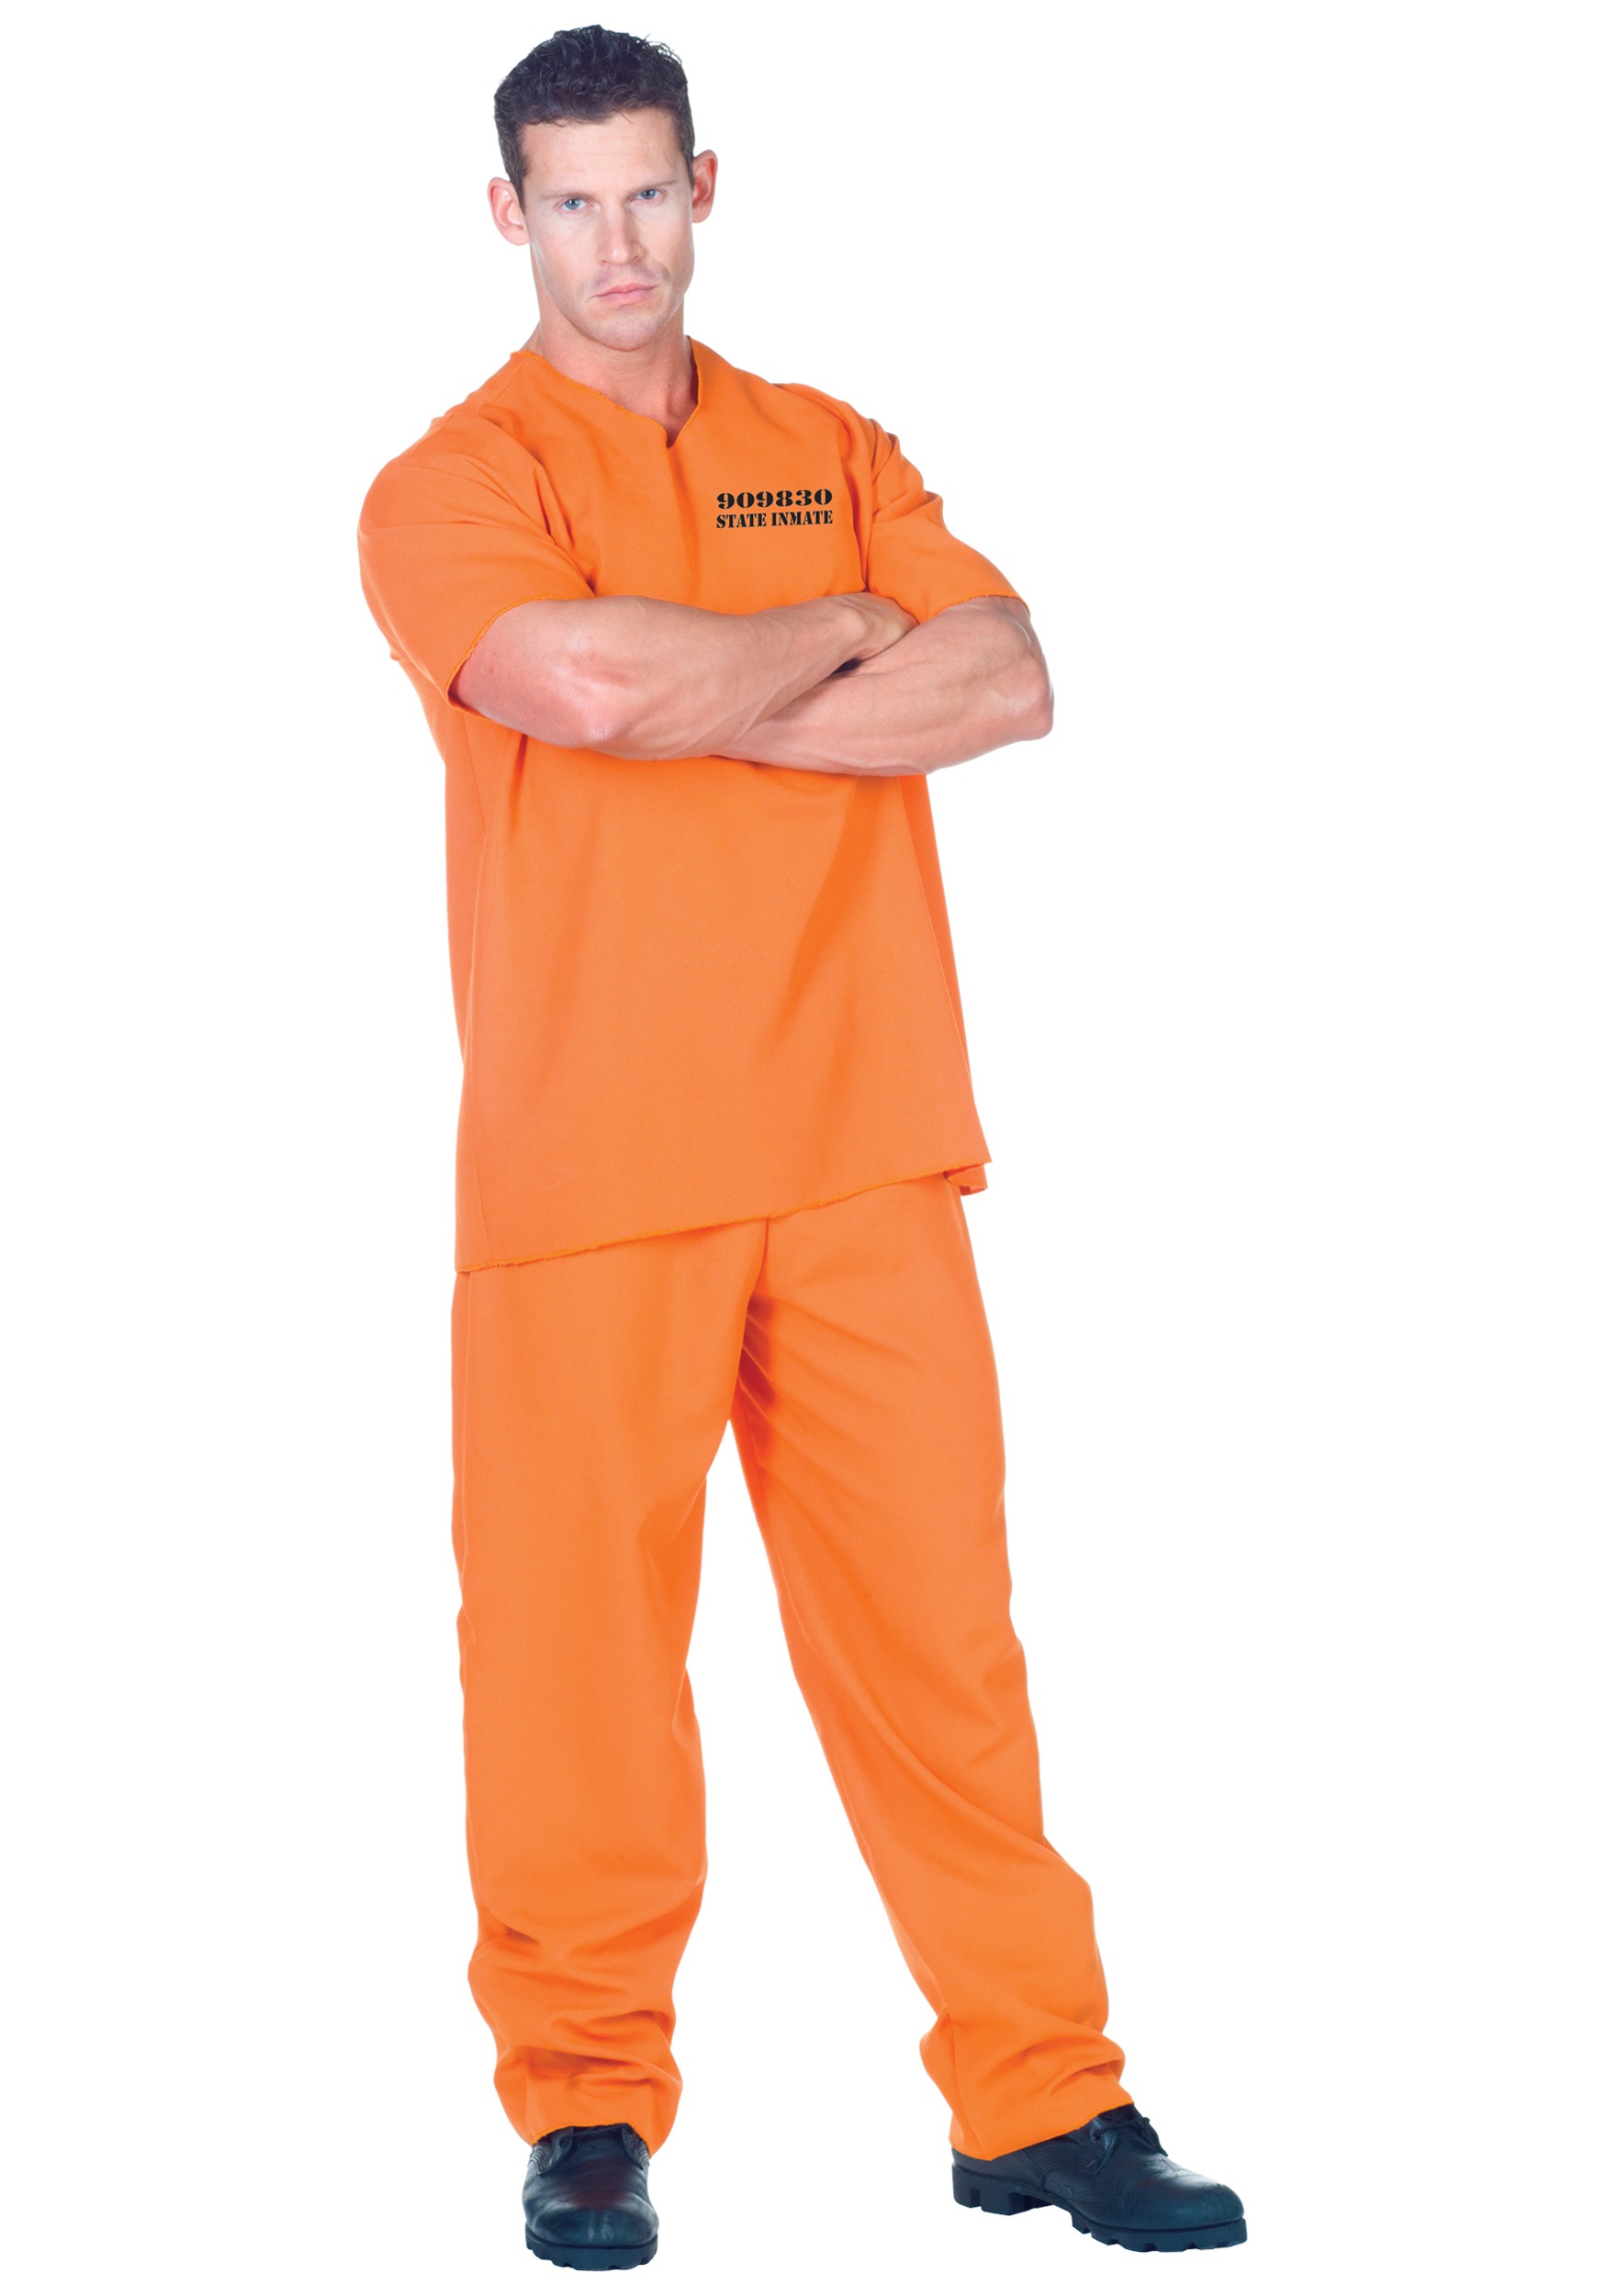 Photos - Fancy Dress Underwraps Plus Size Orange Jumpsuit Prisoner Costume for Adults Orange UN